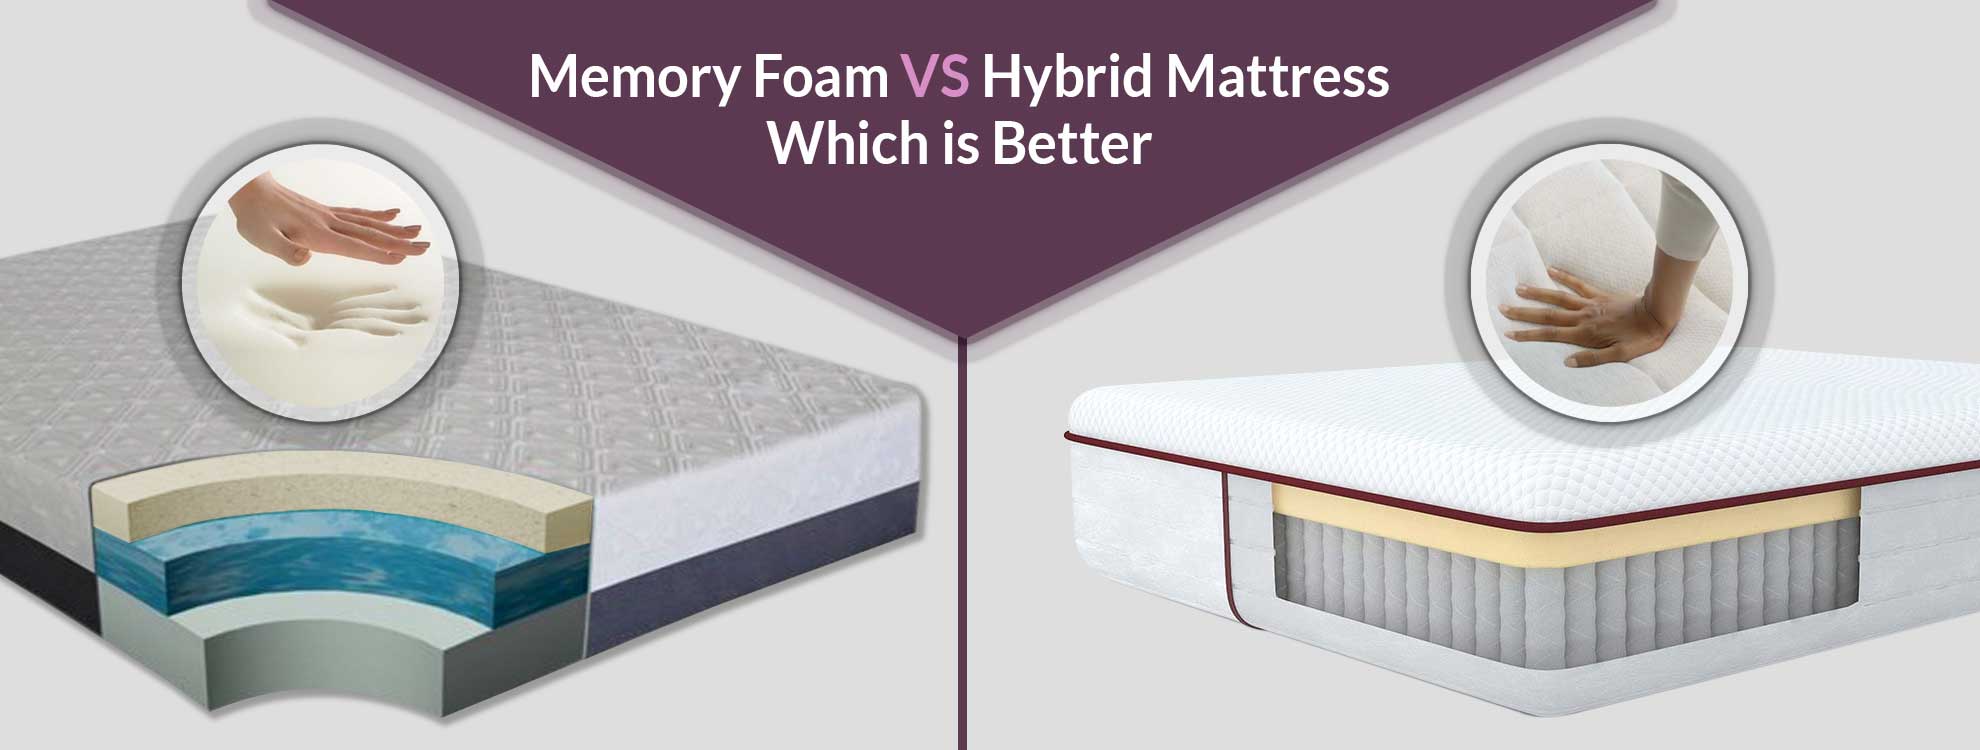 hybrid mattress versus memory foam mattress